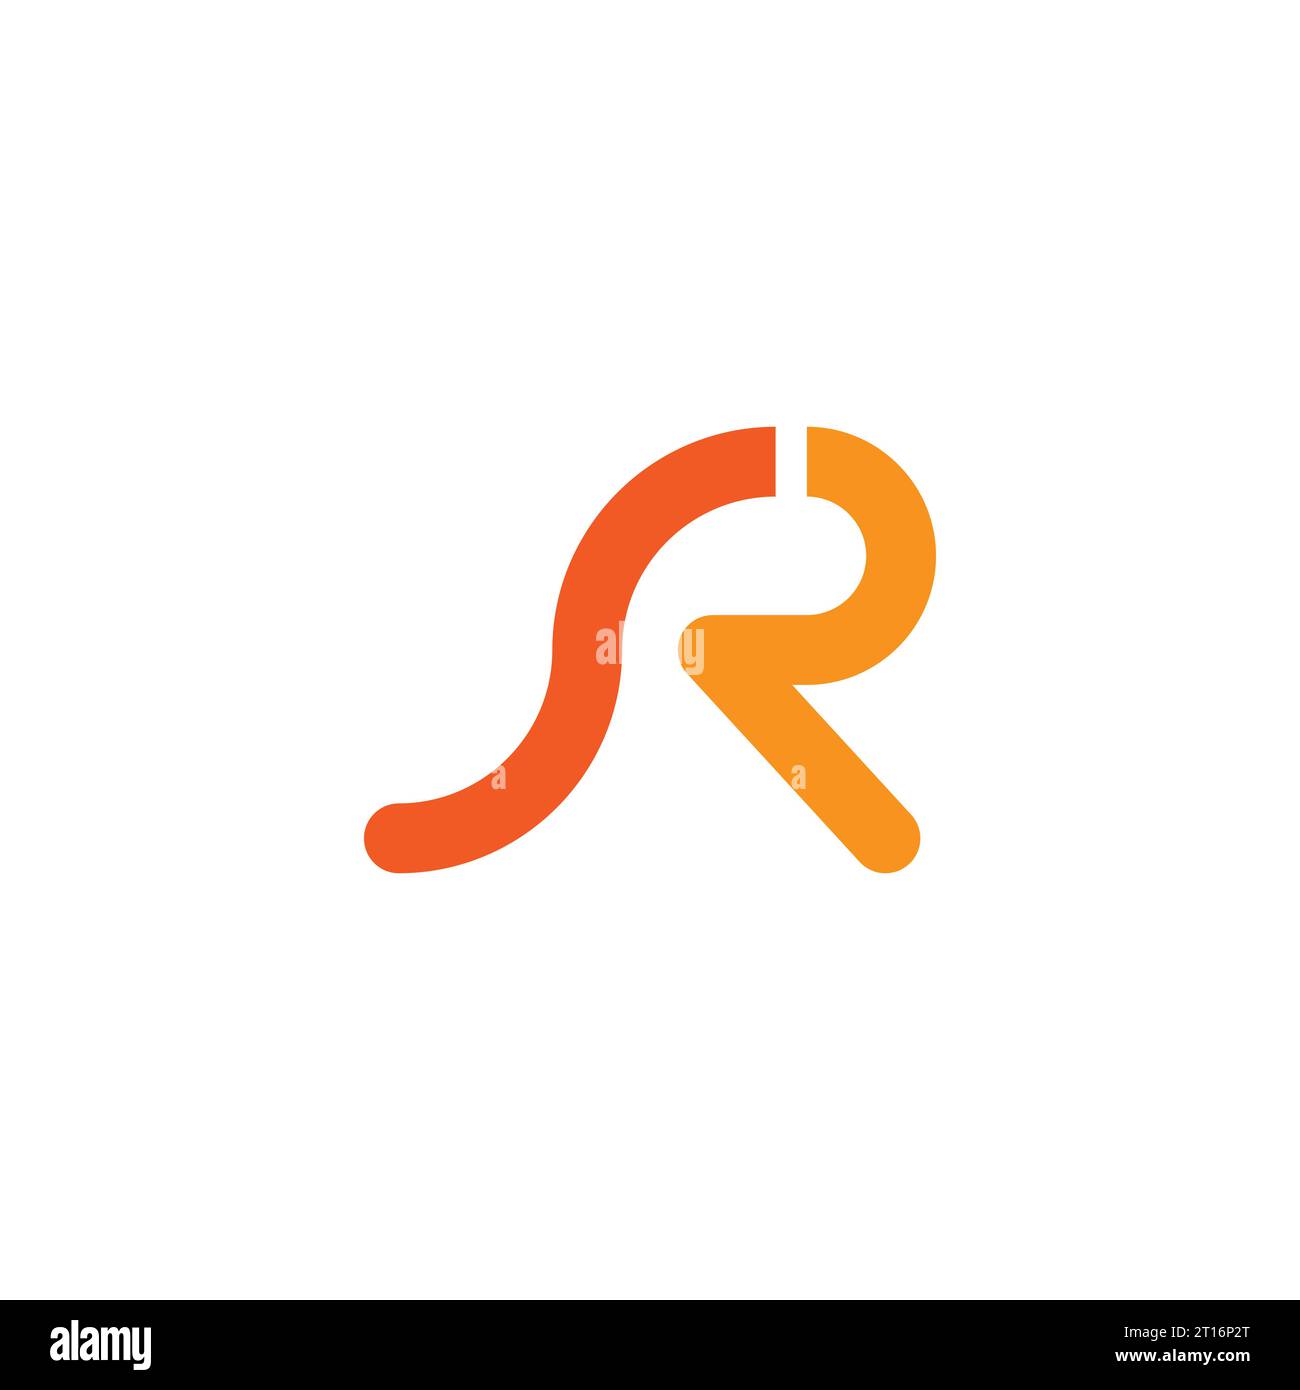 SR logo, SR Monogram, Initial SR Logo, Letter SR logo, Icon, Vector Stock Vector